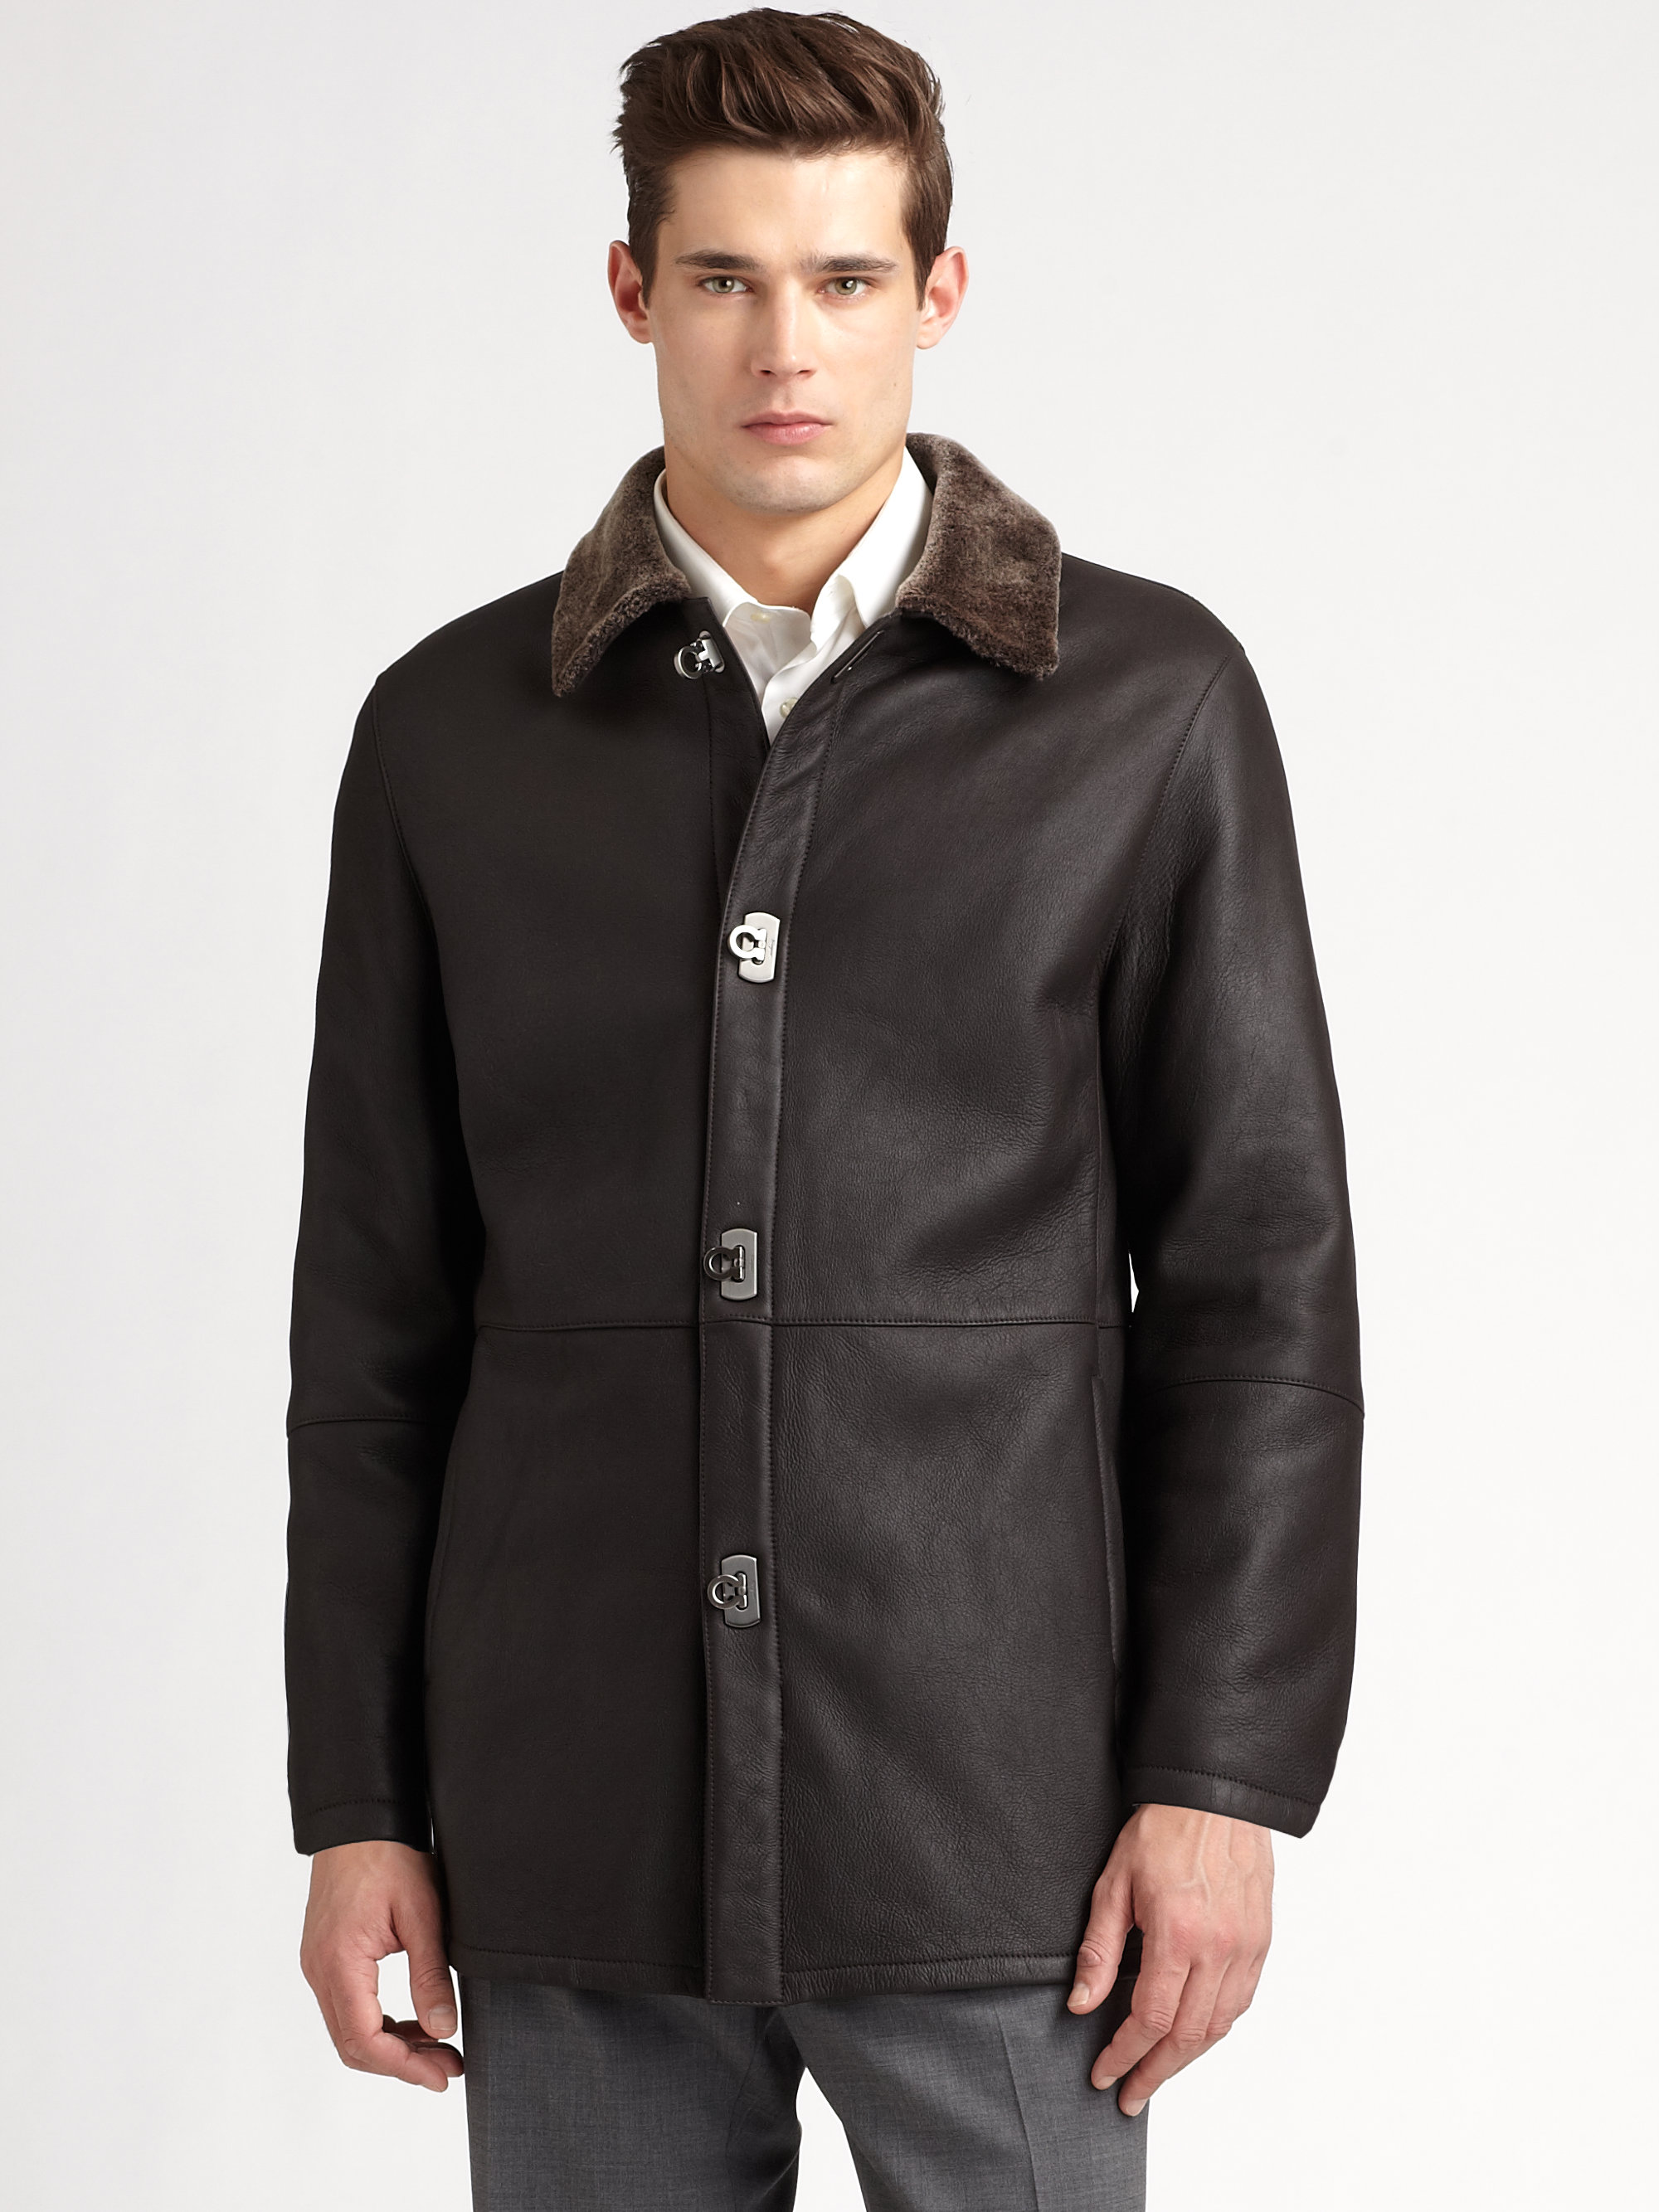 Lyst - Ferragamo Shearling Jacket in Brown for Men